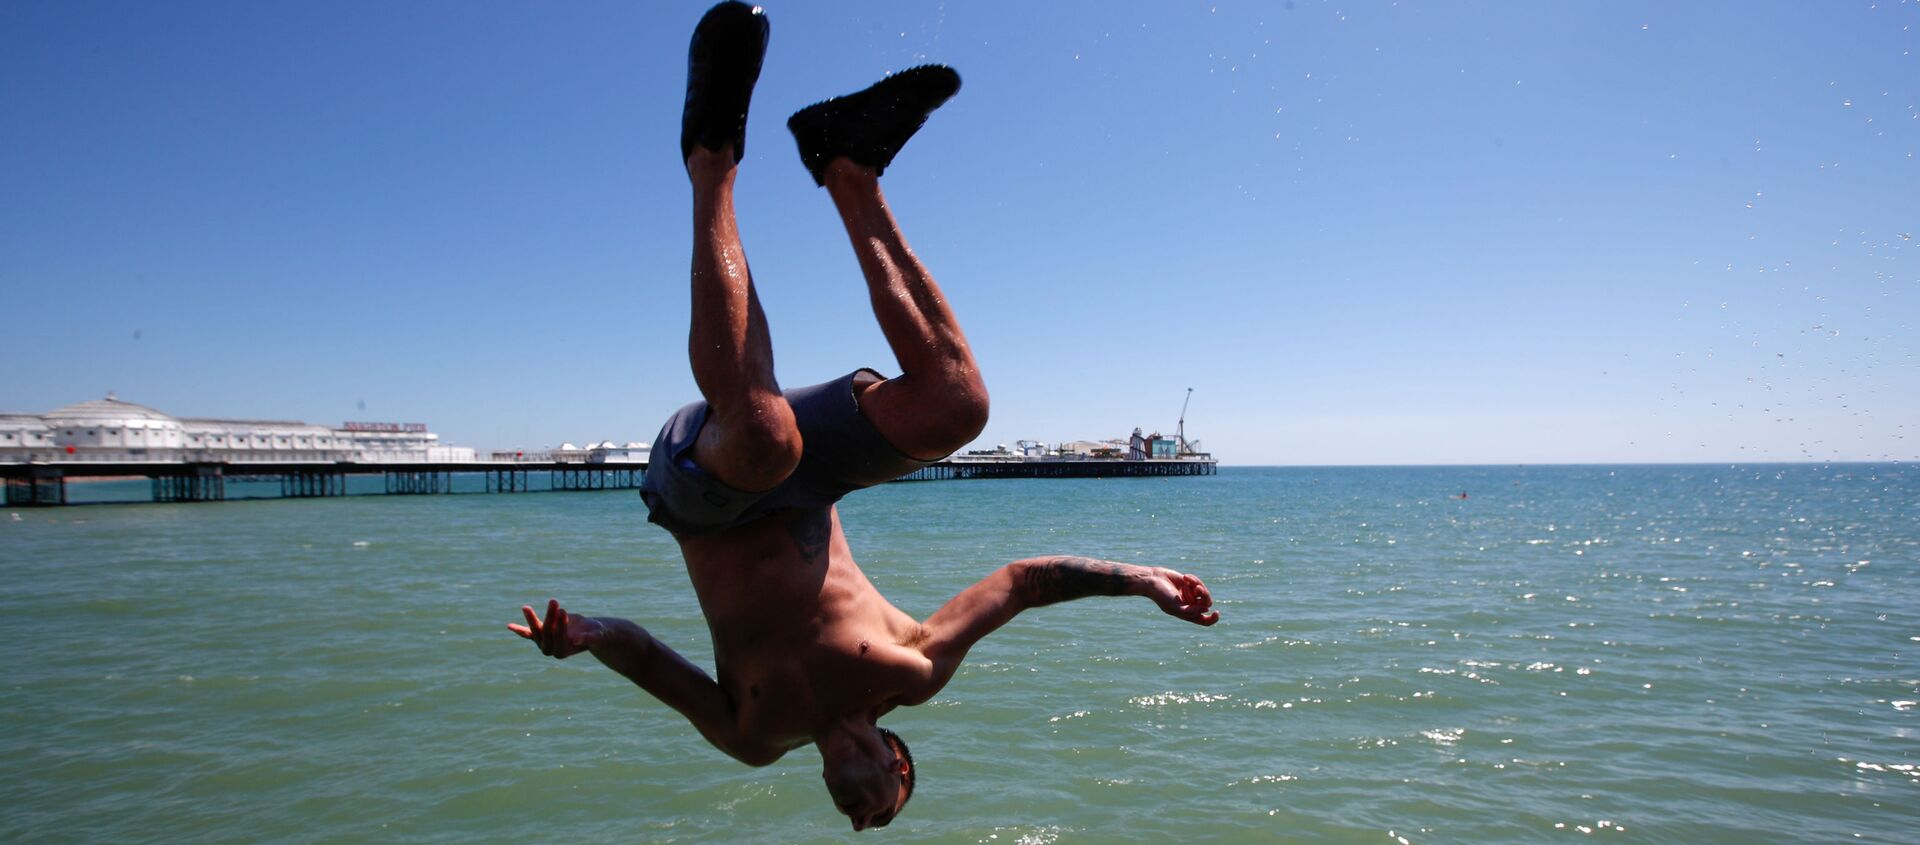 Мужчина прыгает в воду на пляже в Брайтоне, Великобритания - Sputnik Ўзбекистон, 1920, 15.08.2020